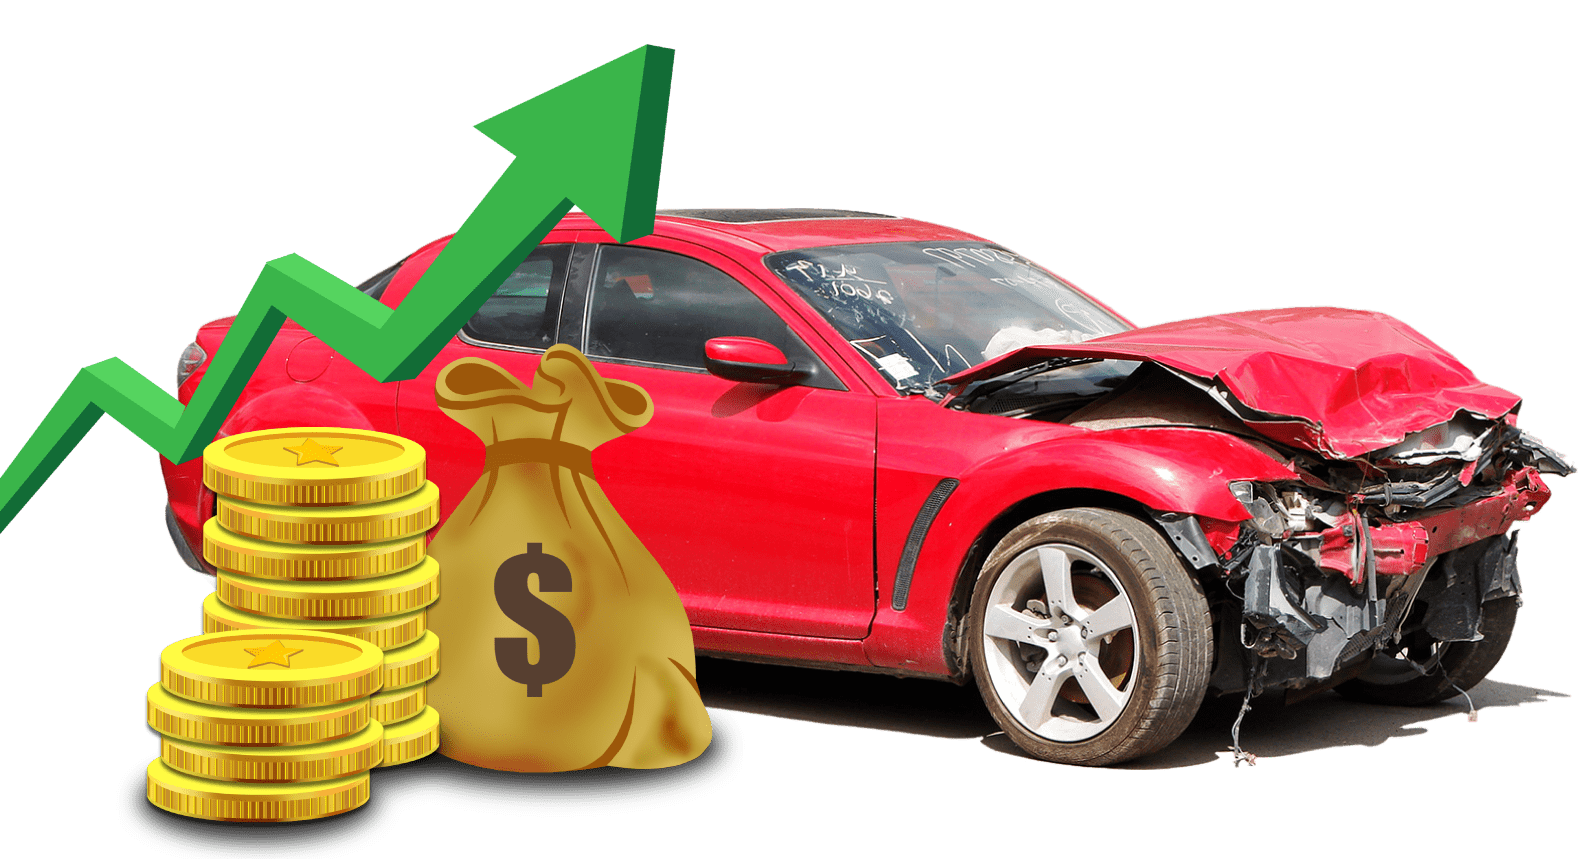  Cash For Cars Kurwongbah  